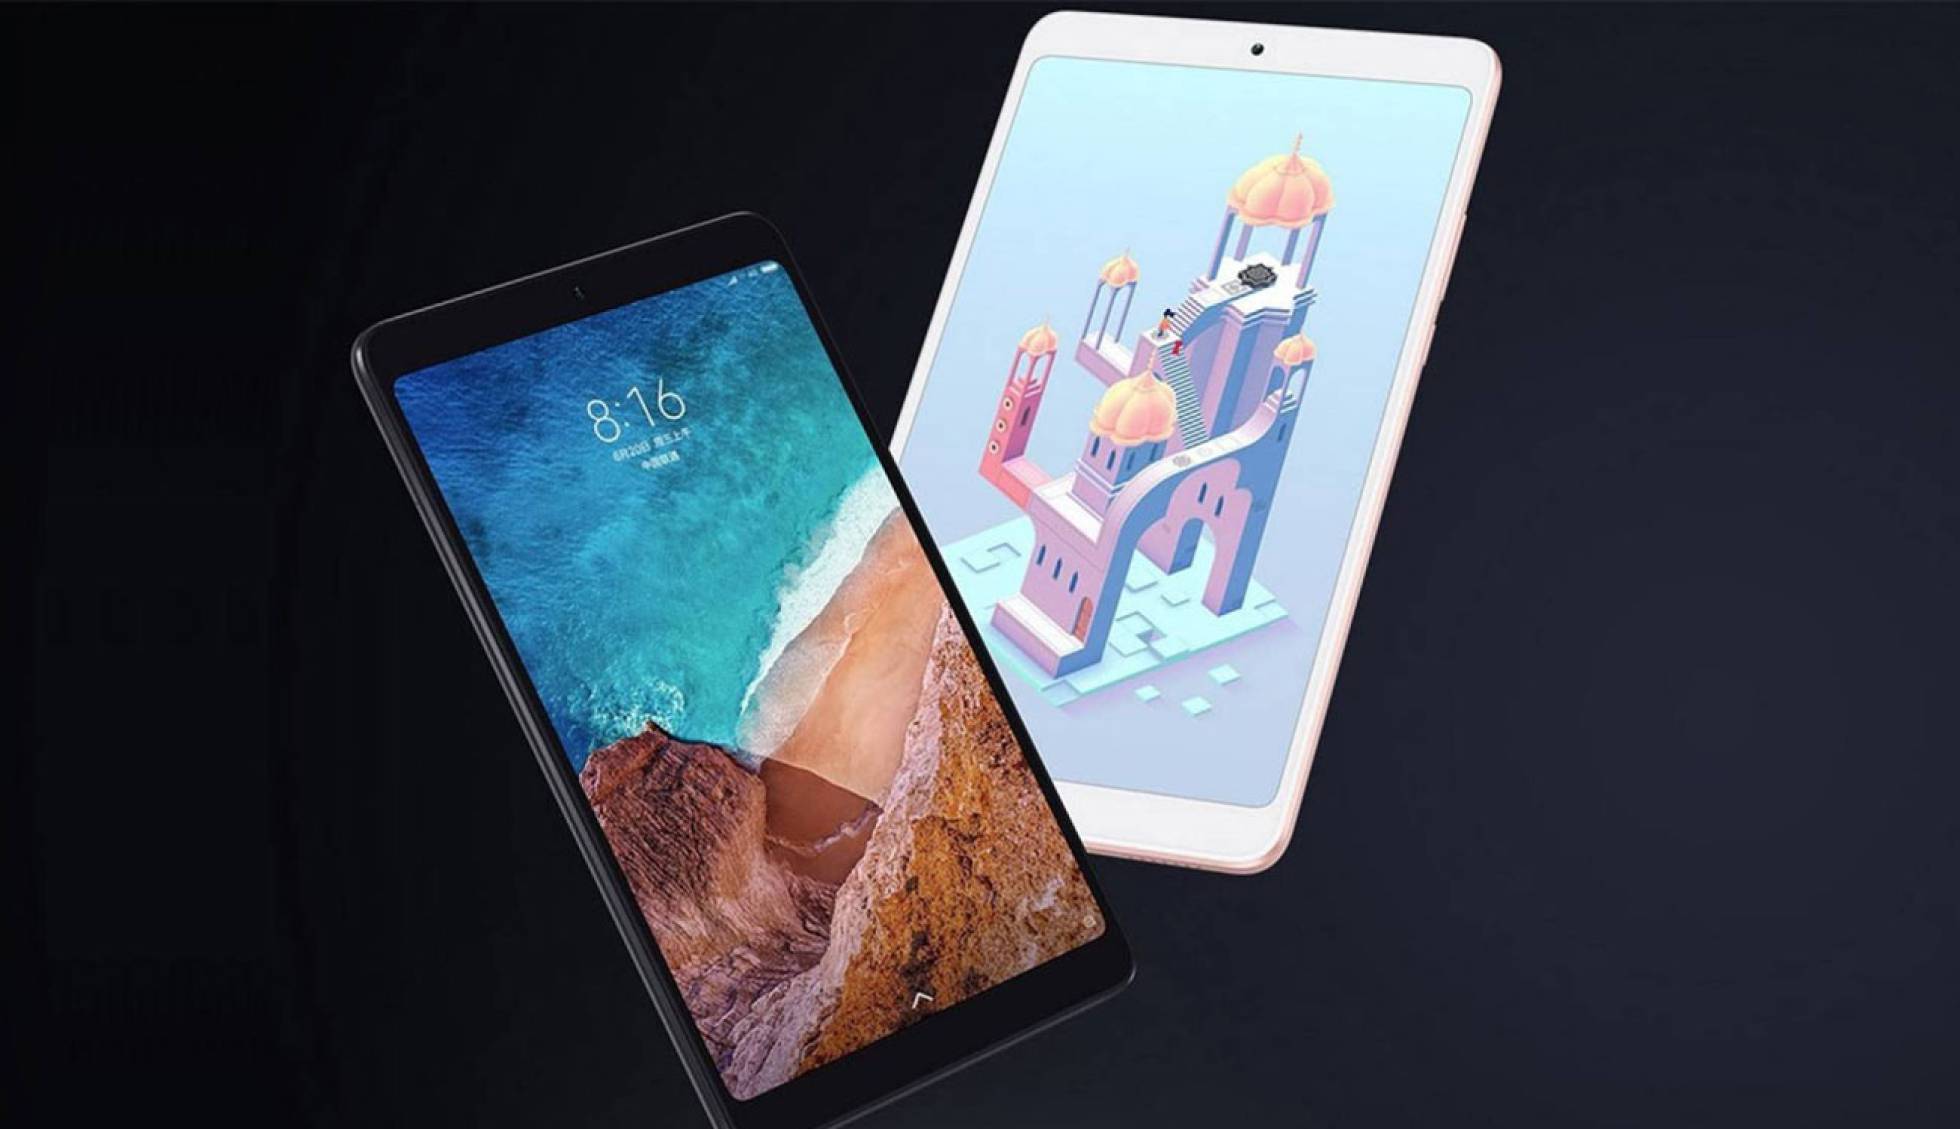 Xiaomi Mi Pad 6 La Tablet En La Que Ya Trabajan Los Chinos Tendrá La Mejor Cámara Del Mercado 1296